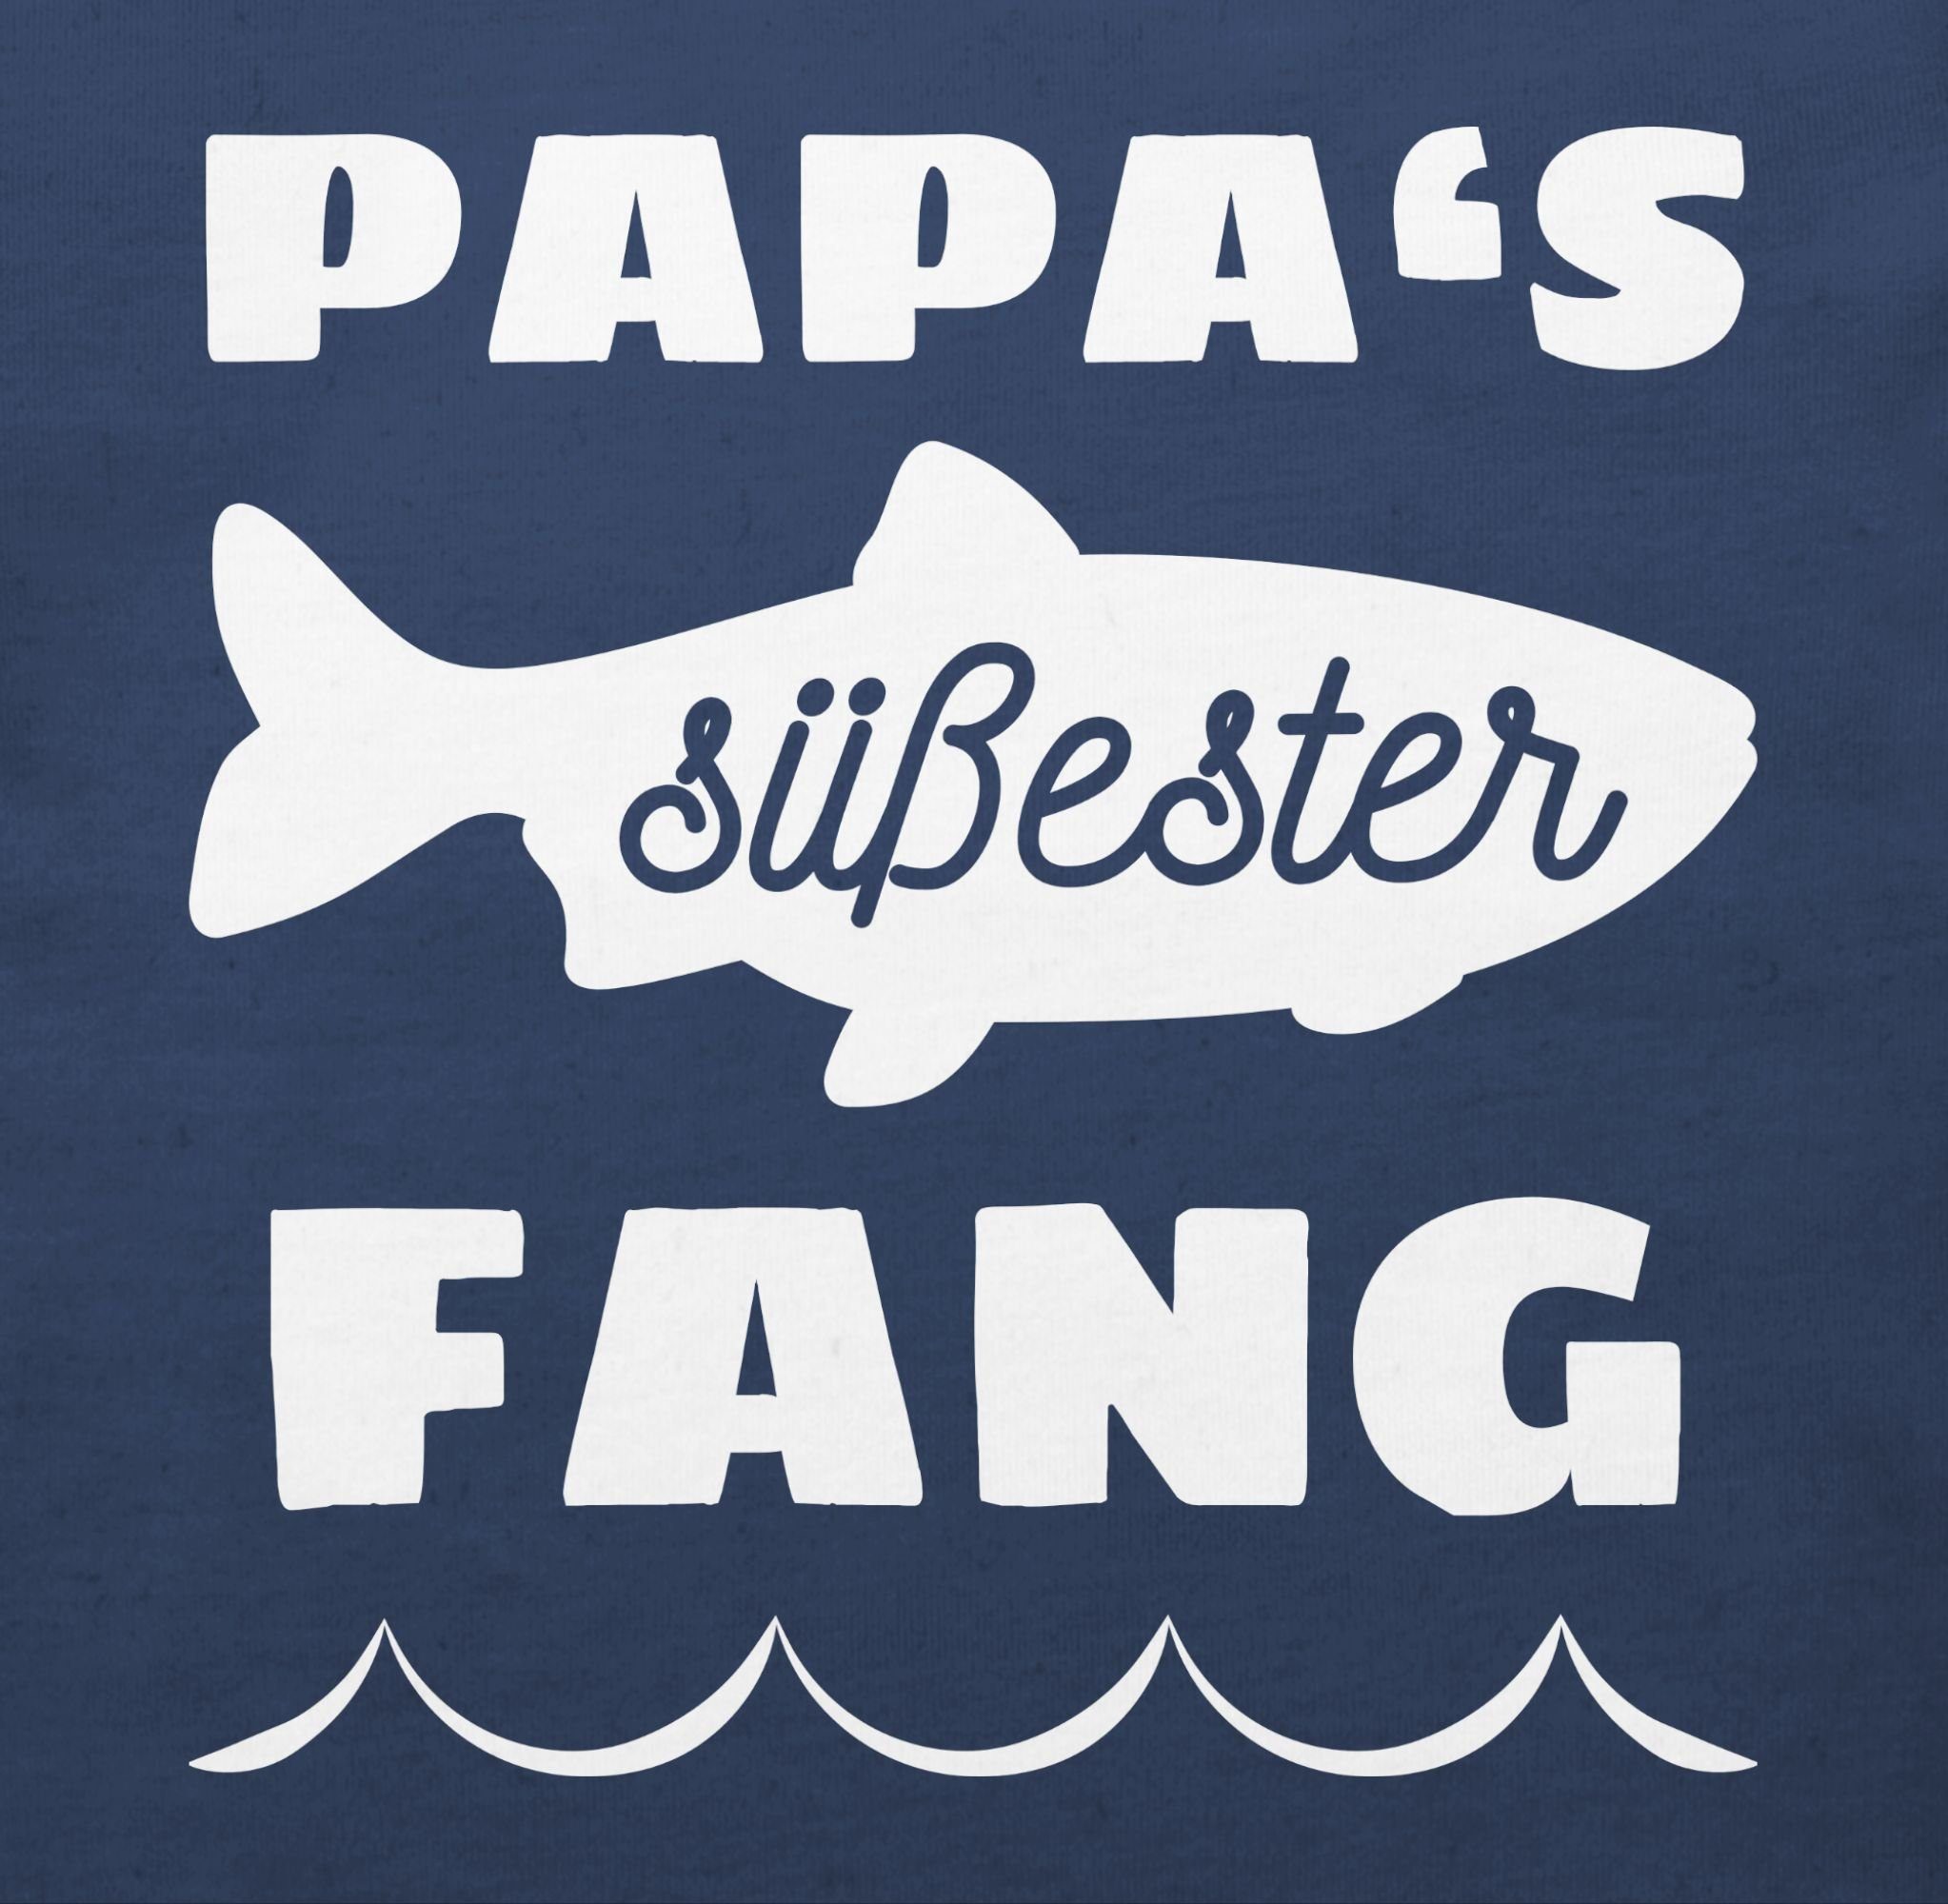 Shirtracer T-Shirt Papas süßester Baby Vatertag Geschenk Navy 2 Blau Fang